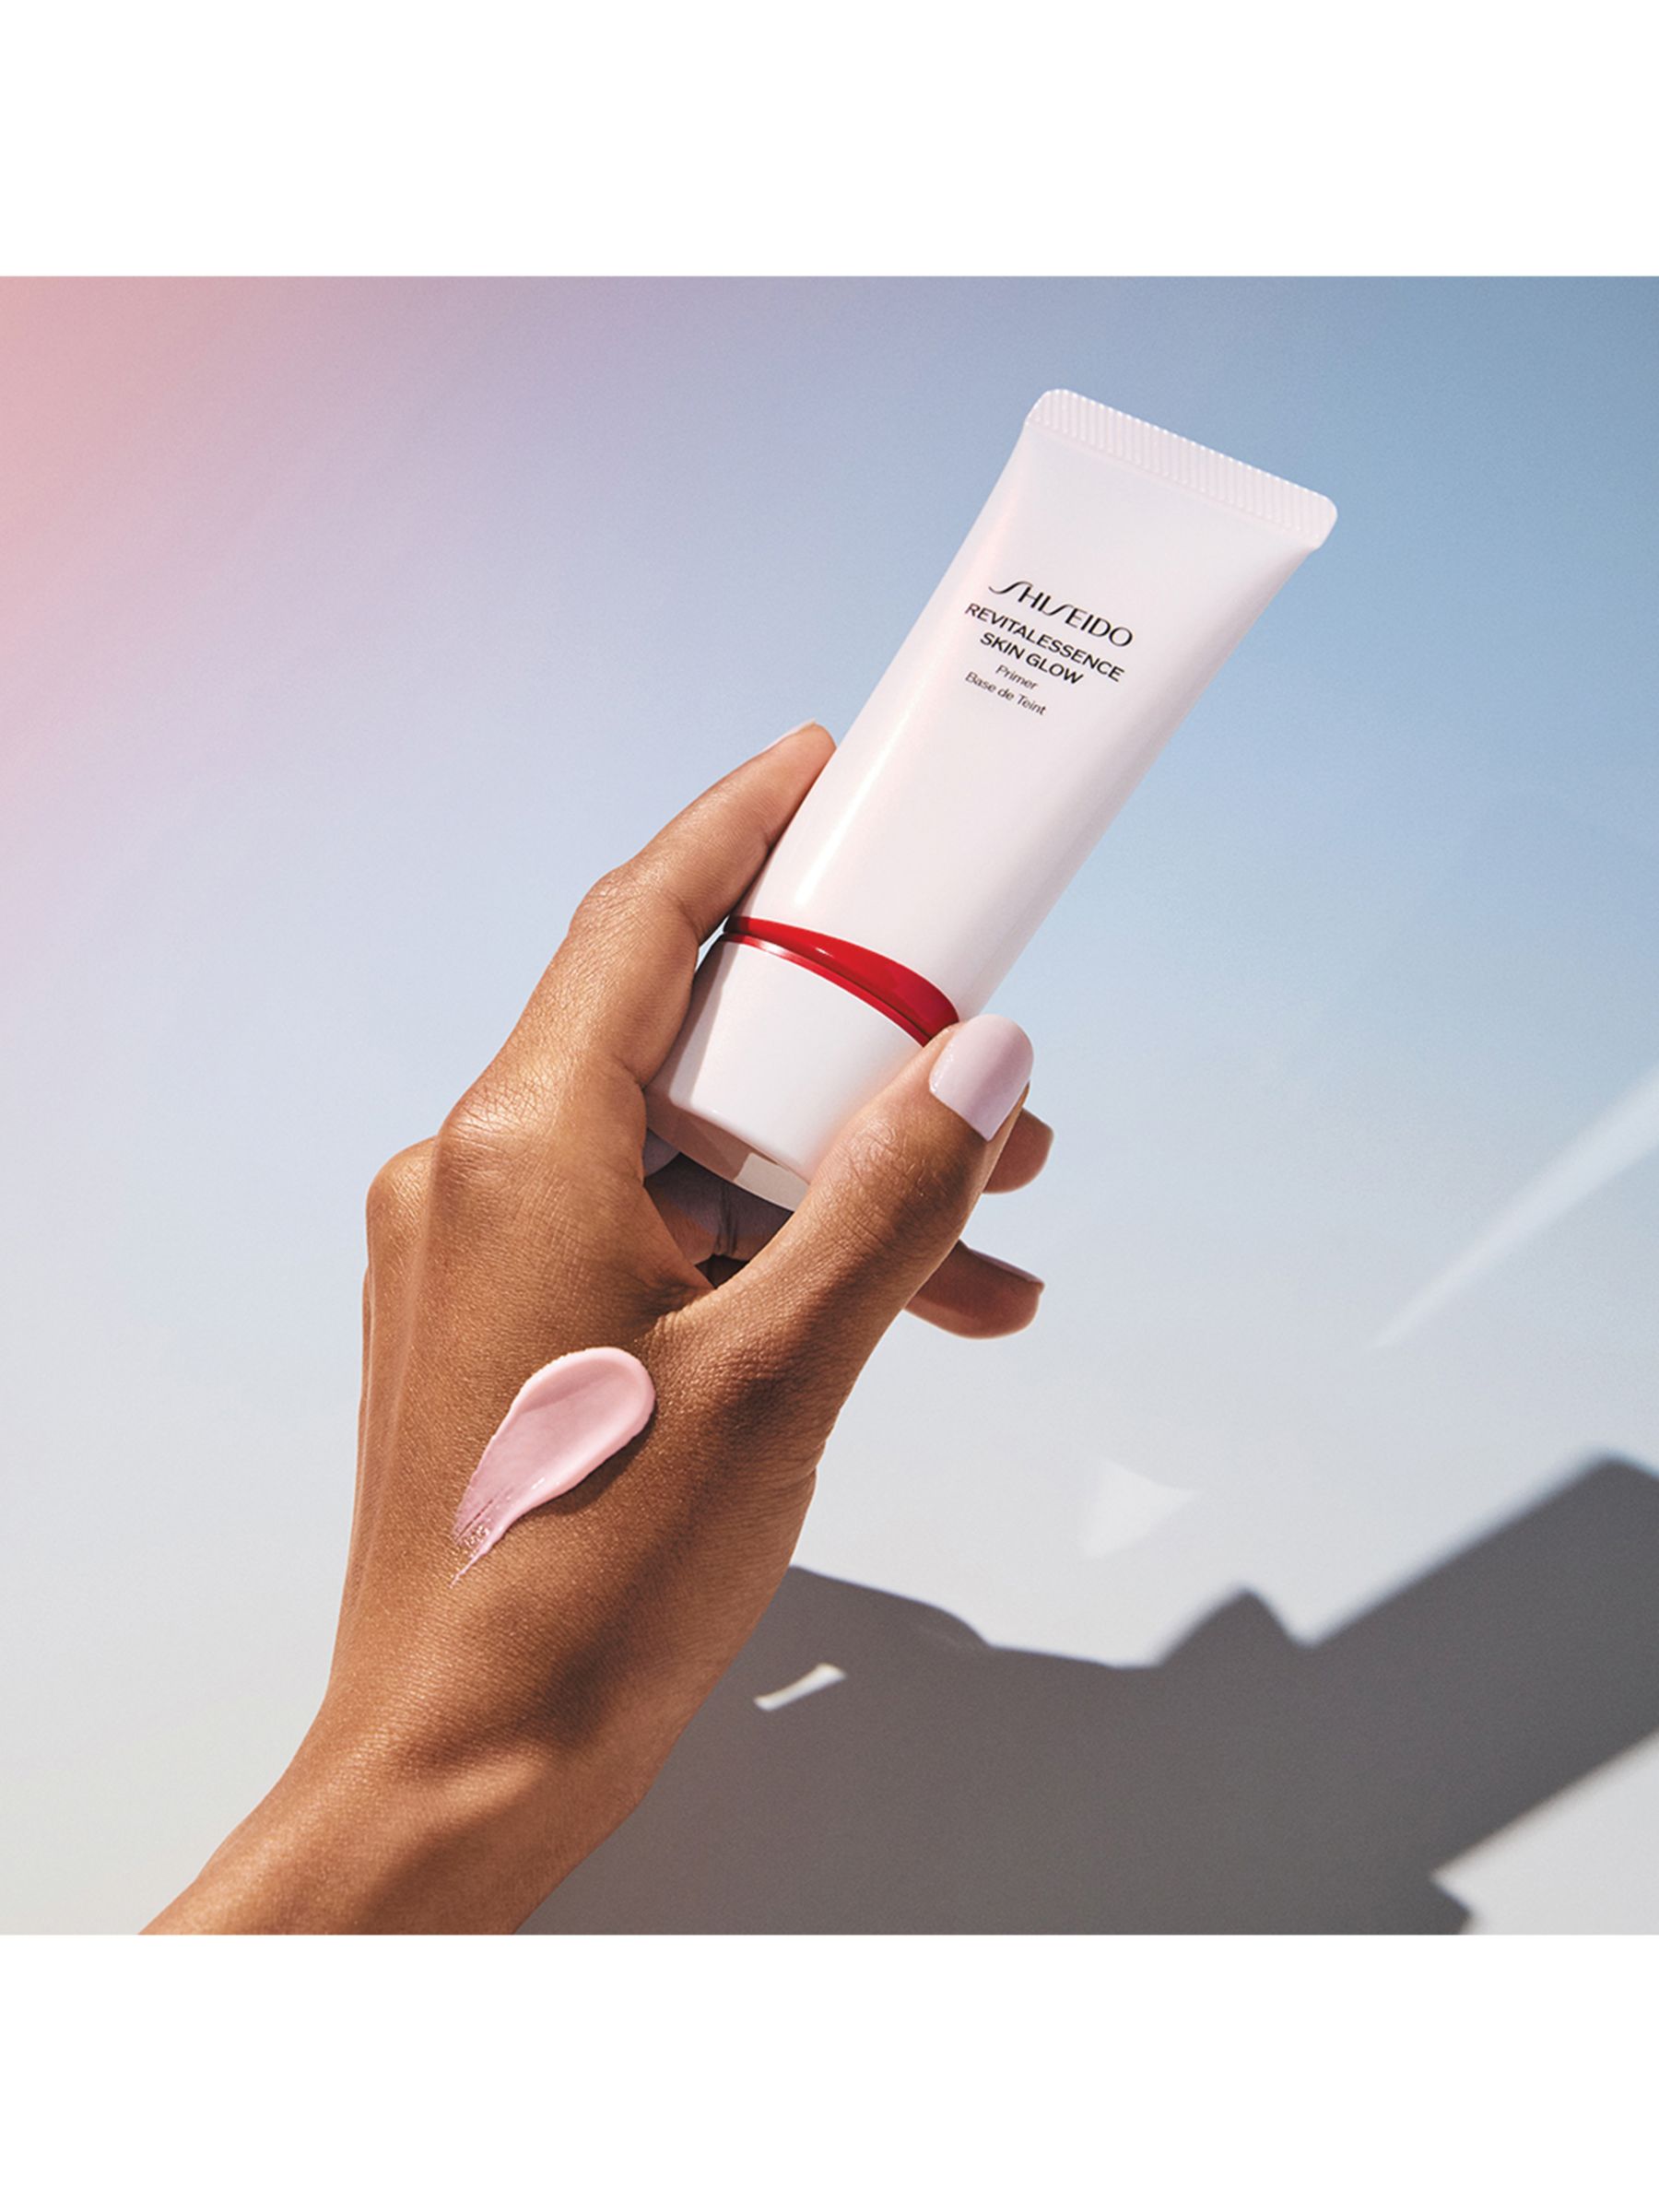 Shiseido RevitalEssence Skin Glow Primer, 30ml 2